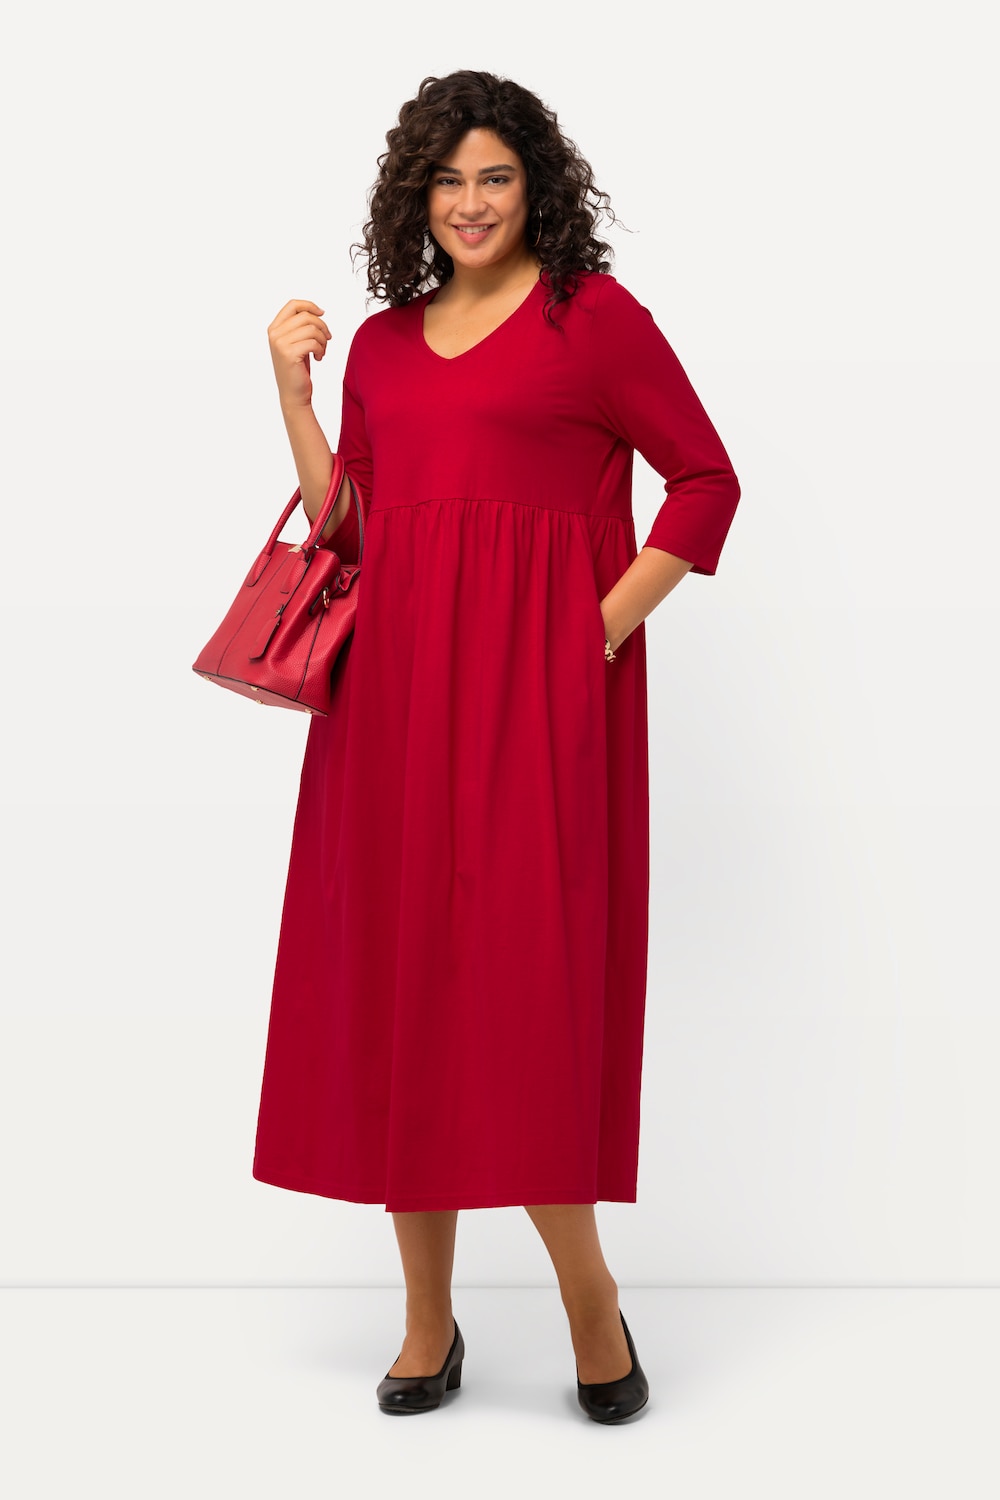 Grote Maten Jersey jurk, Dames, rood, Maat: 66/68, Katoen, Ulla Popken